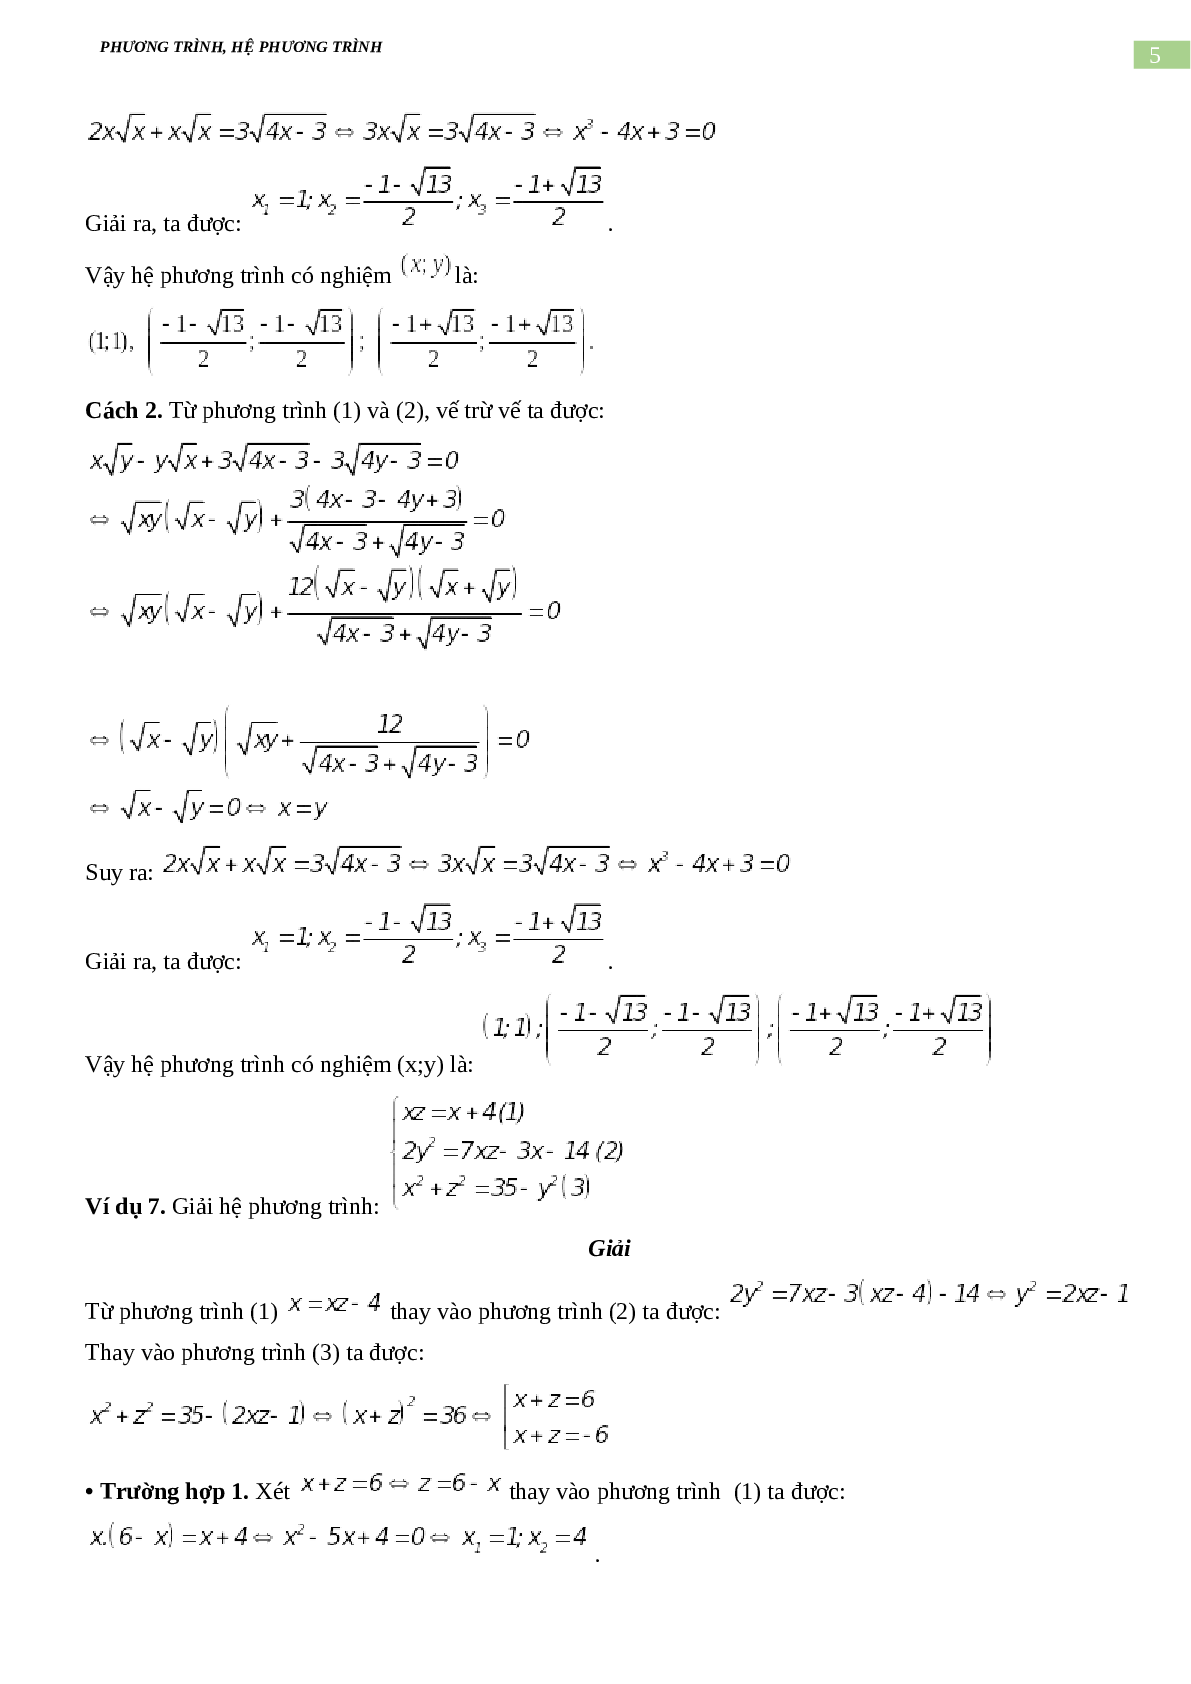 Bài tập về phương trình, hệ phương trình, bất phương trình không mẫu mực có đáp án, chọn lọc (trang 5)